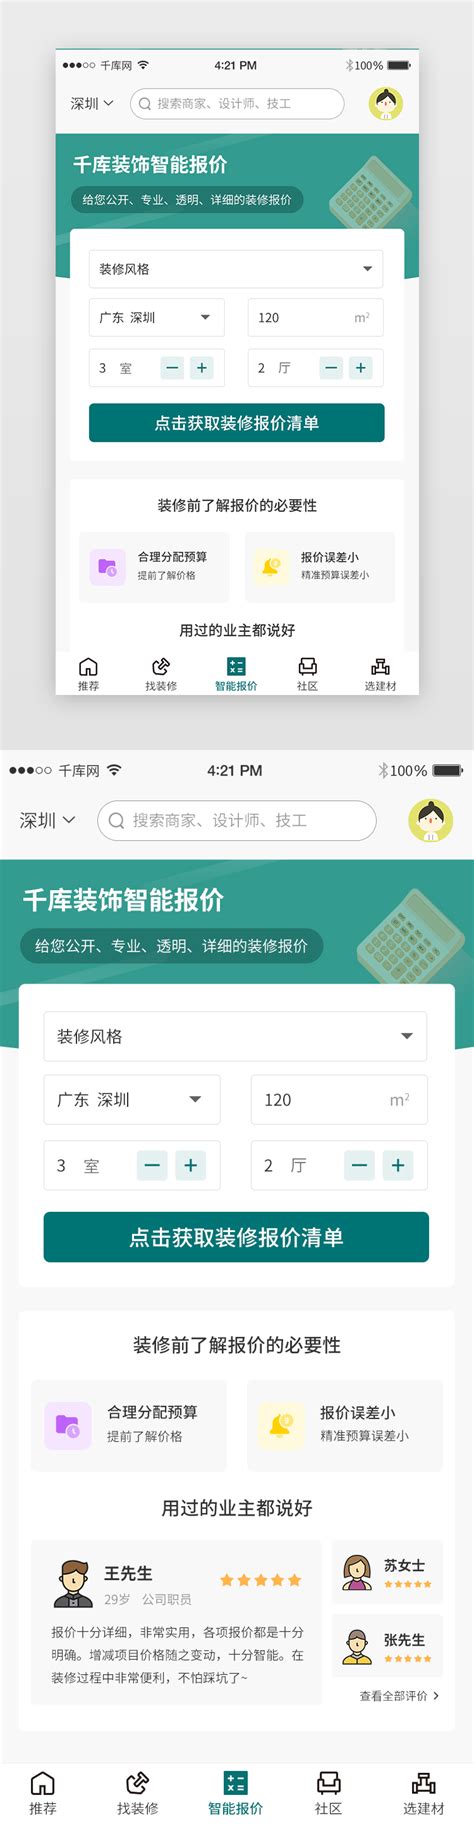 中國邊警在遊客手機中安裝監控App – DW – 2019年7月3日